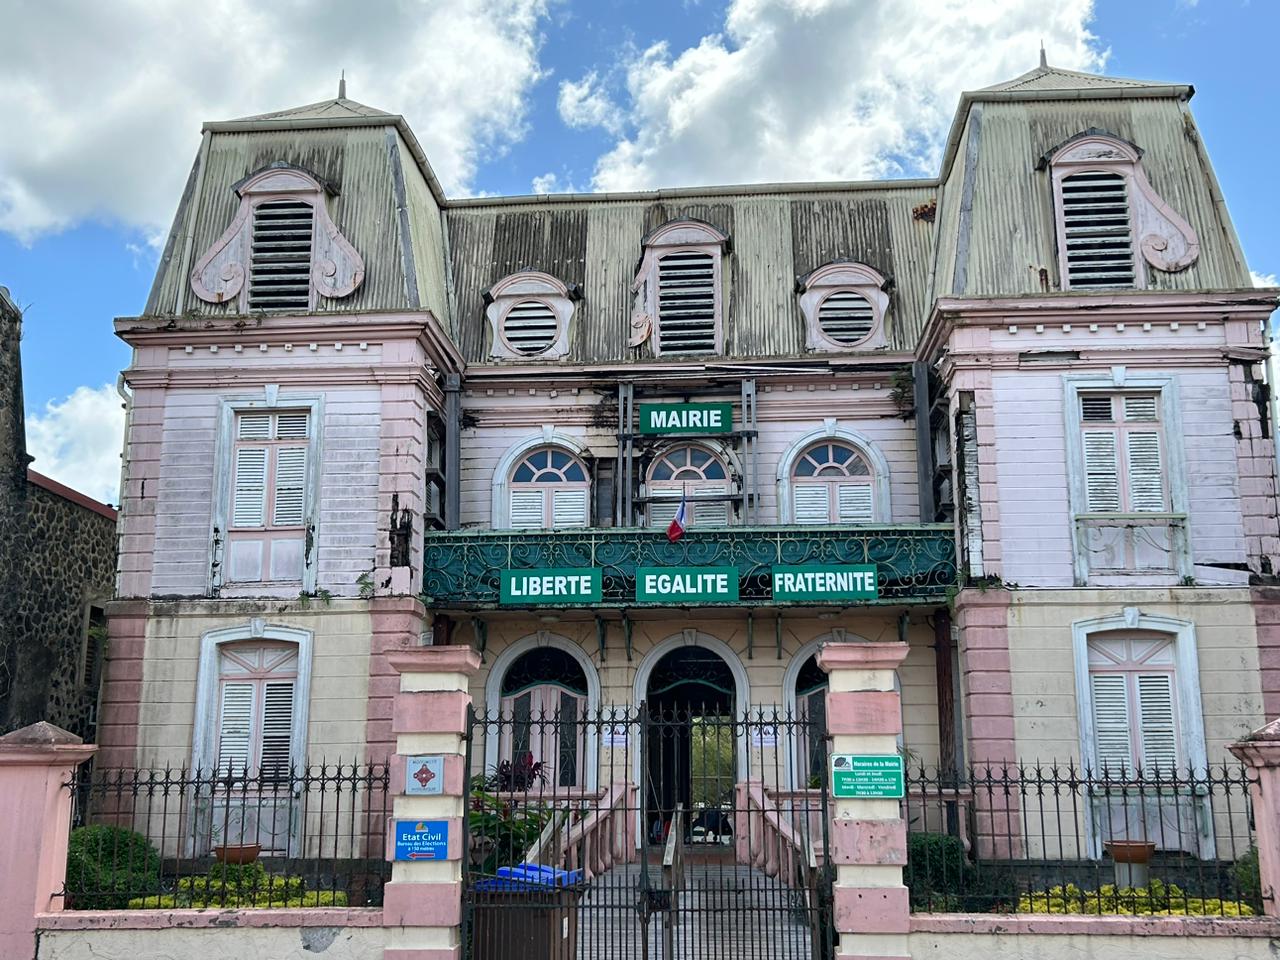     Loto du Patrimoine : 500 000 euros pour la rénovation de la mairie du Saint-Esprit

